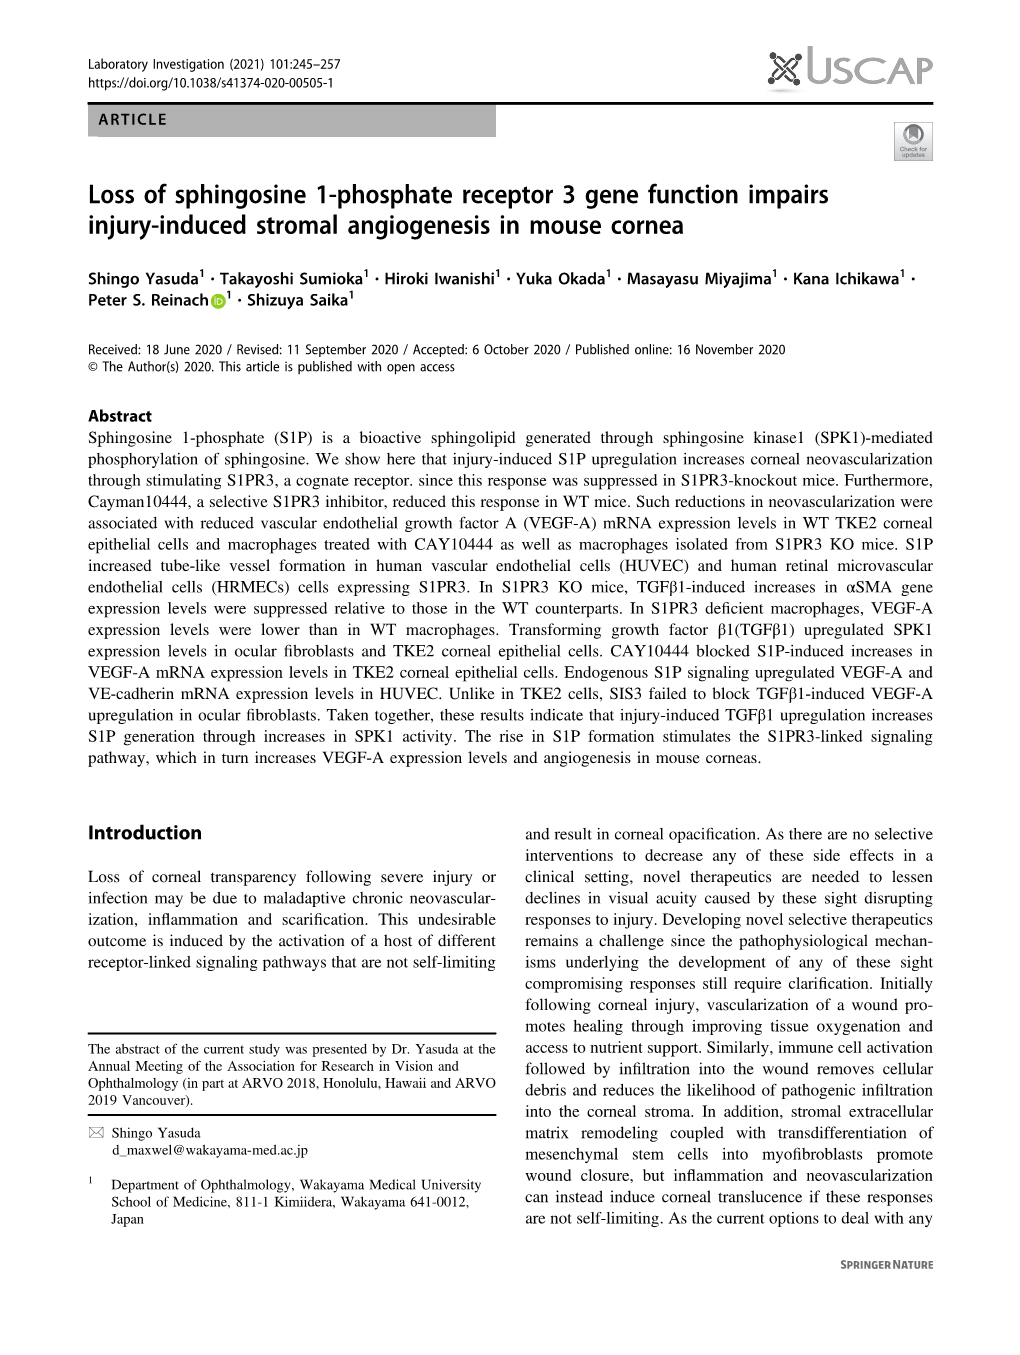 Loss of Sphingosine 1-Phosphate Receptor 3 Gene Function Impairs Injury-Induced Stromal Angiogenesis in Mouse Cornea